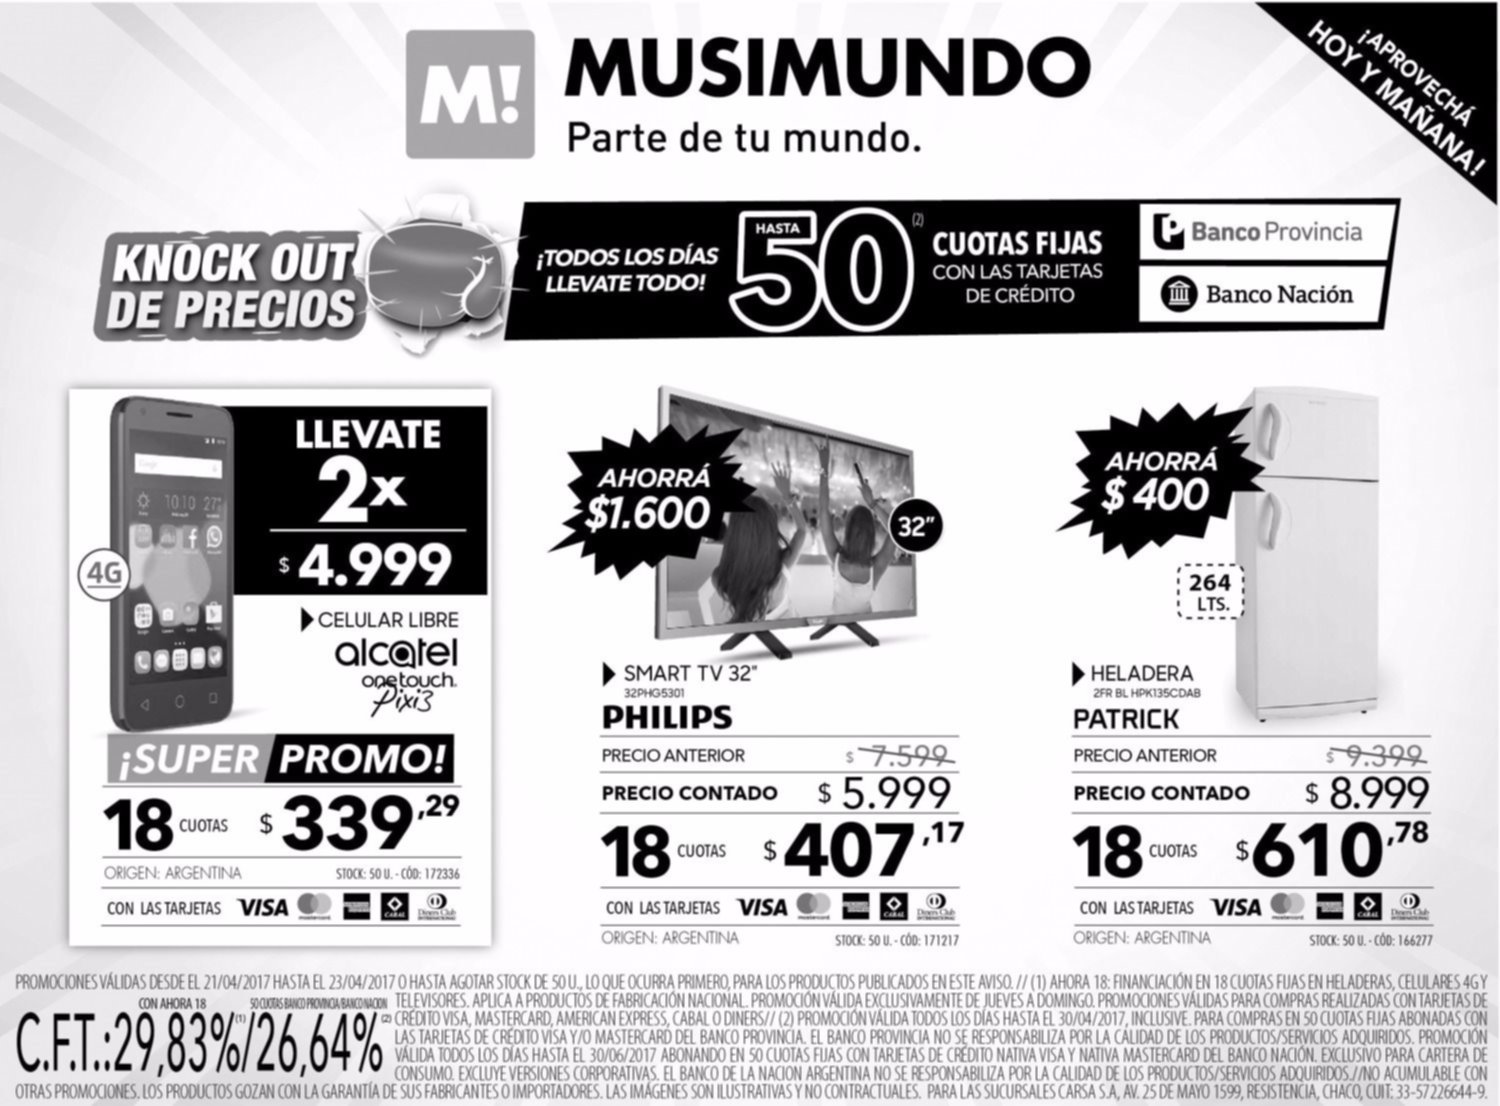 Knock out de precios en Musimundo y planes de hasta 50 cuotas fijas